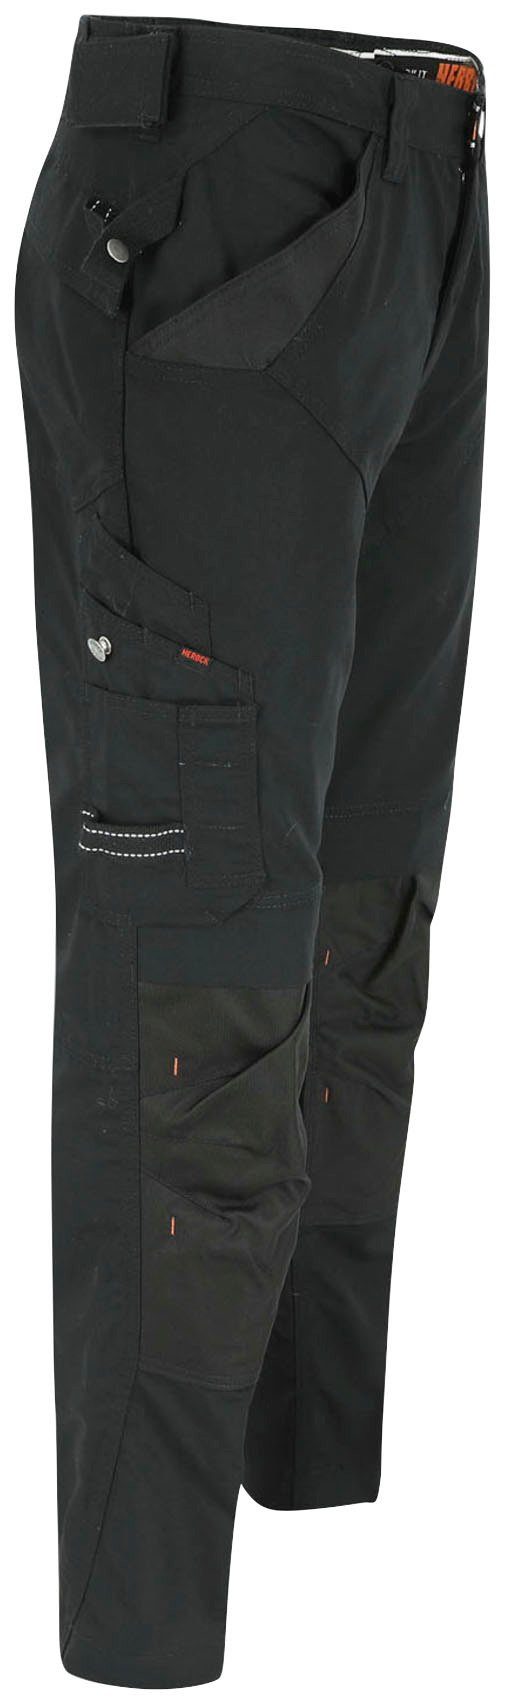 - Regelbarer Bund Arbeitshose - 8 Taschen Herock - HOSE schwarz APOLLO & leicht SHORTLEG bequem Wasserabweisend